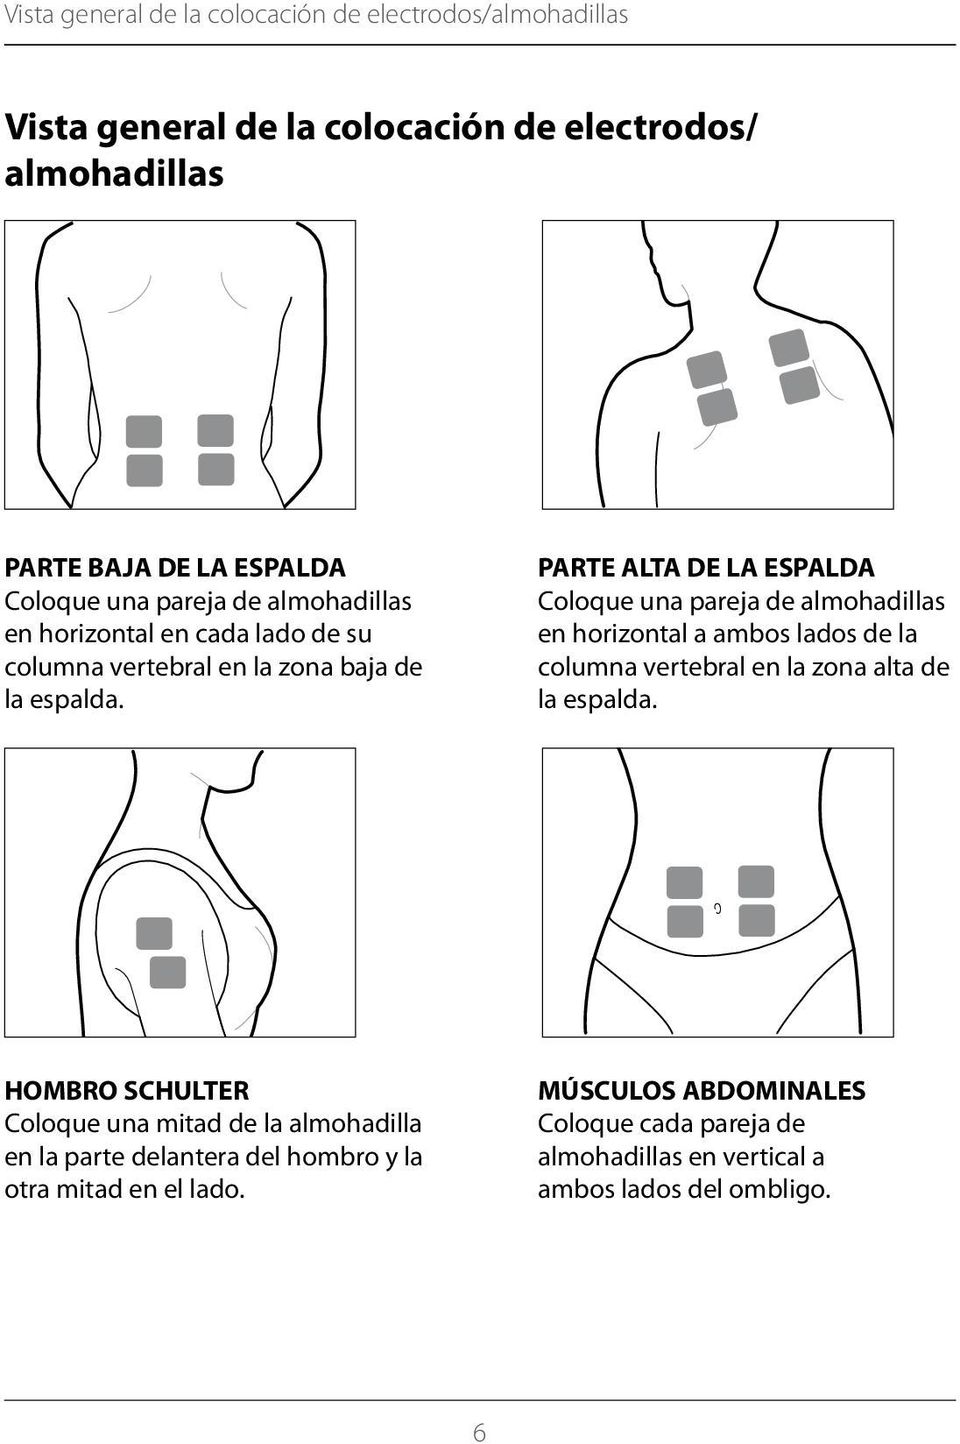 PARTE ALTA DE LA ESPALDA Coloque una pareja de almo hadillas en horizontal a ambos lados de la columna vertebral en la zona alta de la espalda.